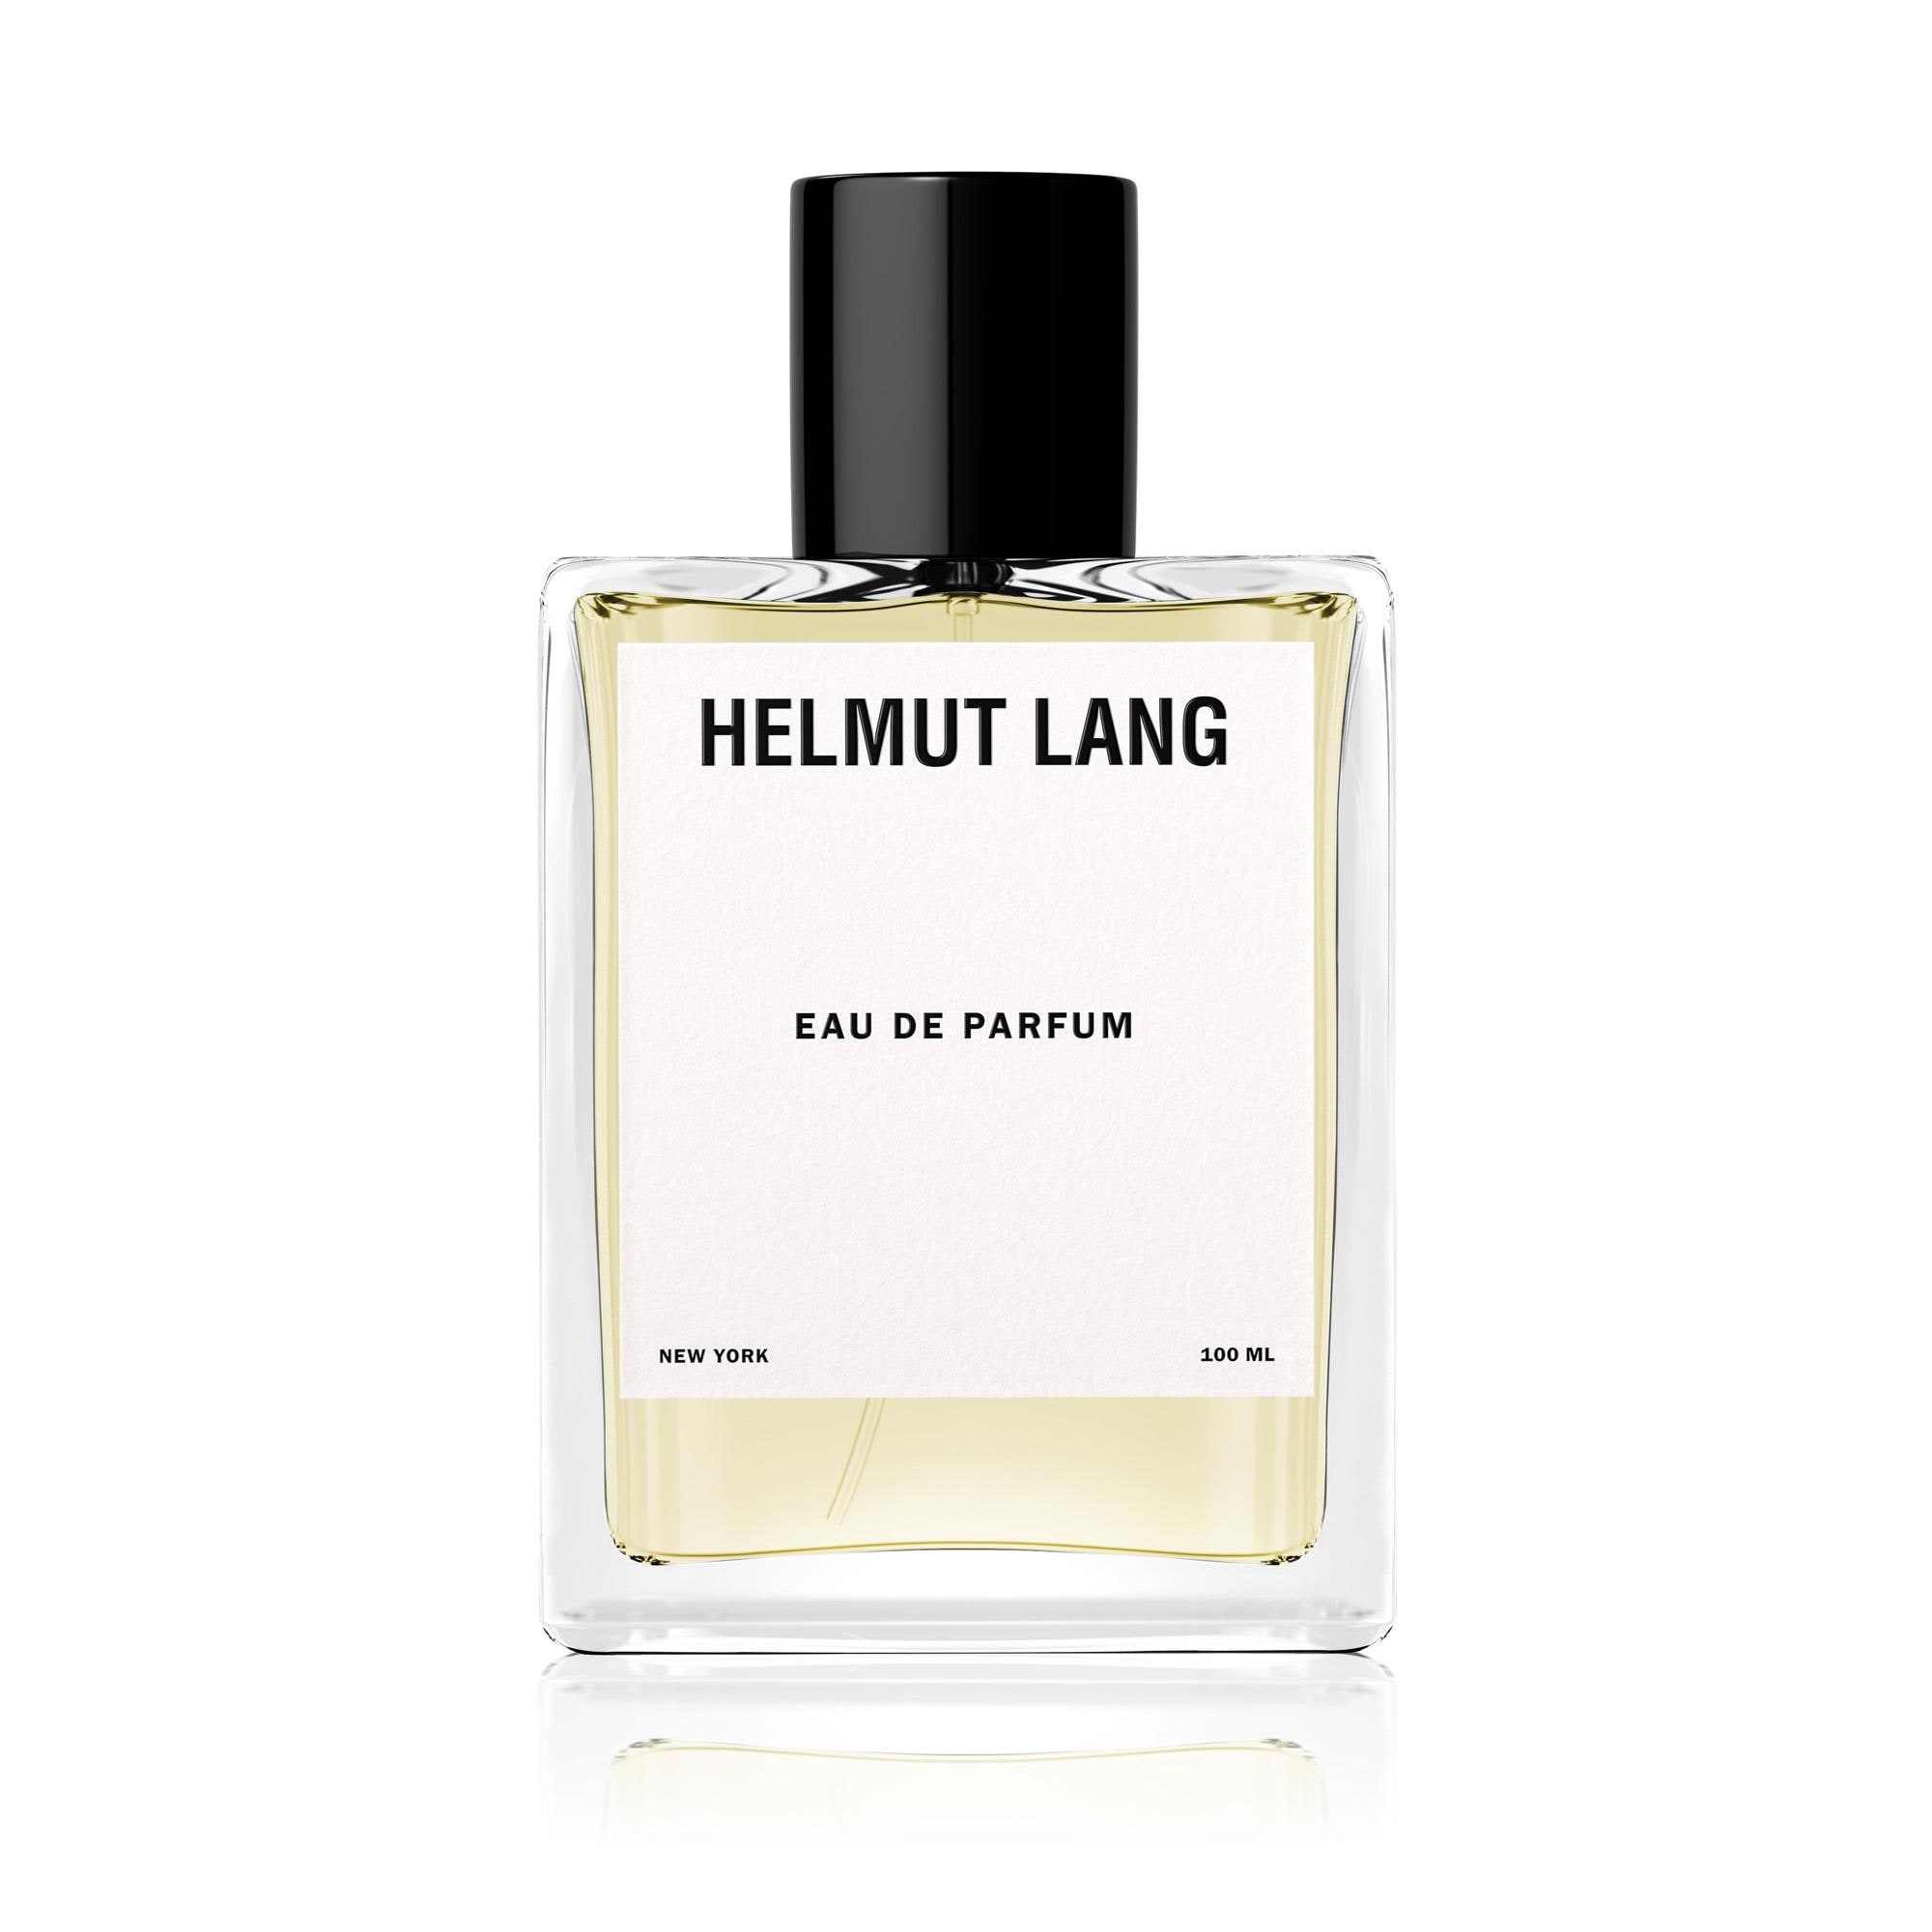 Helmut Lang Eau de Parfum  Perfume photography, Beauty products